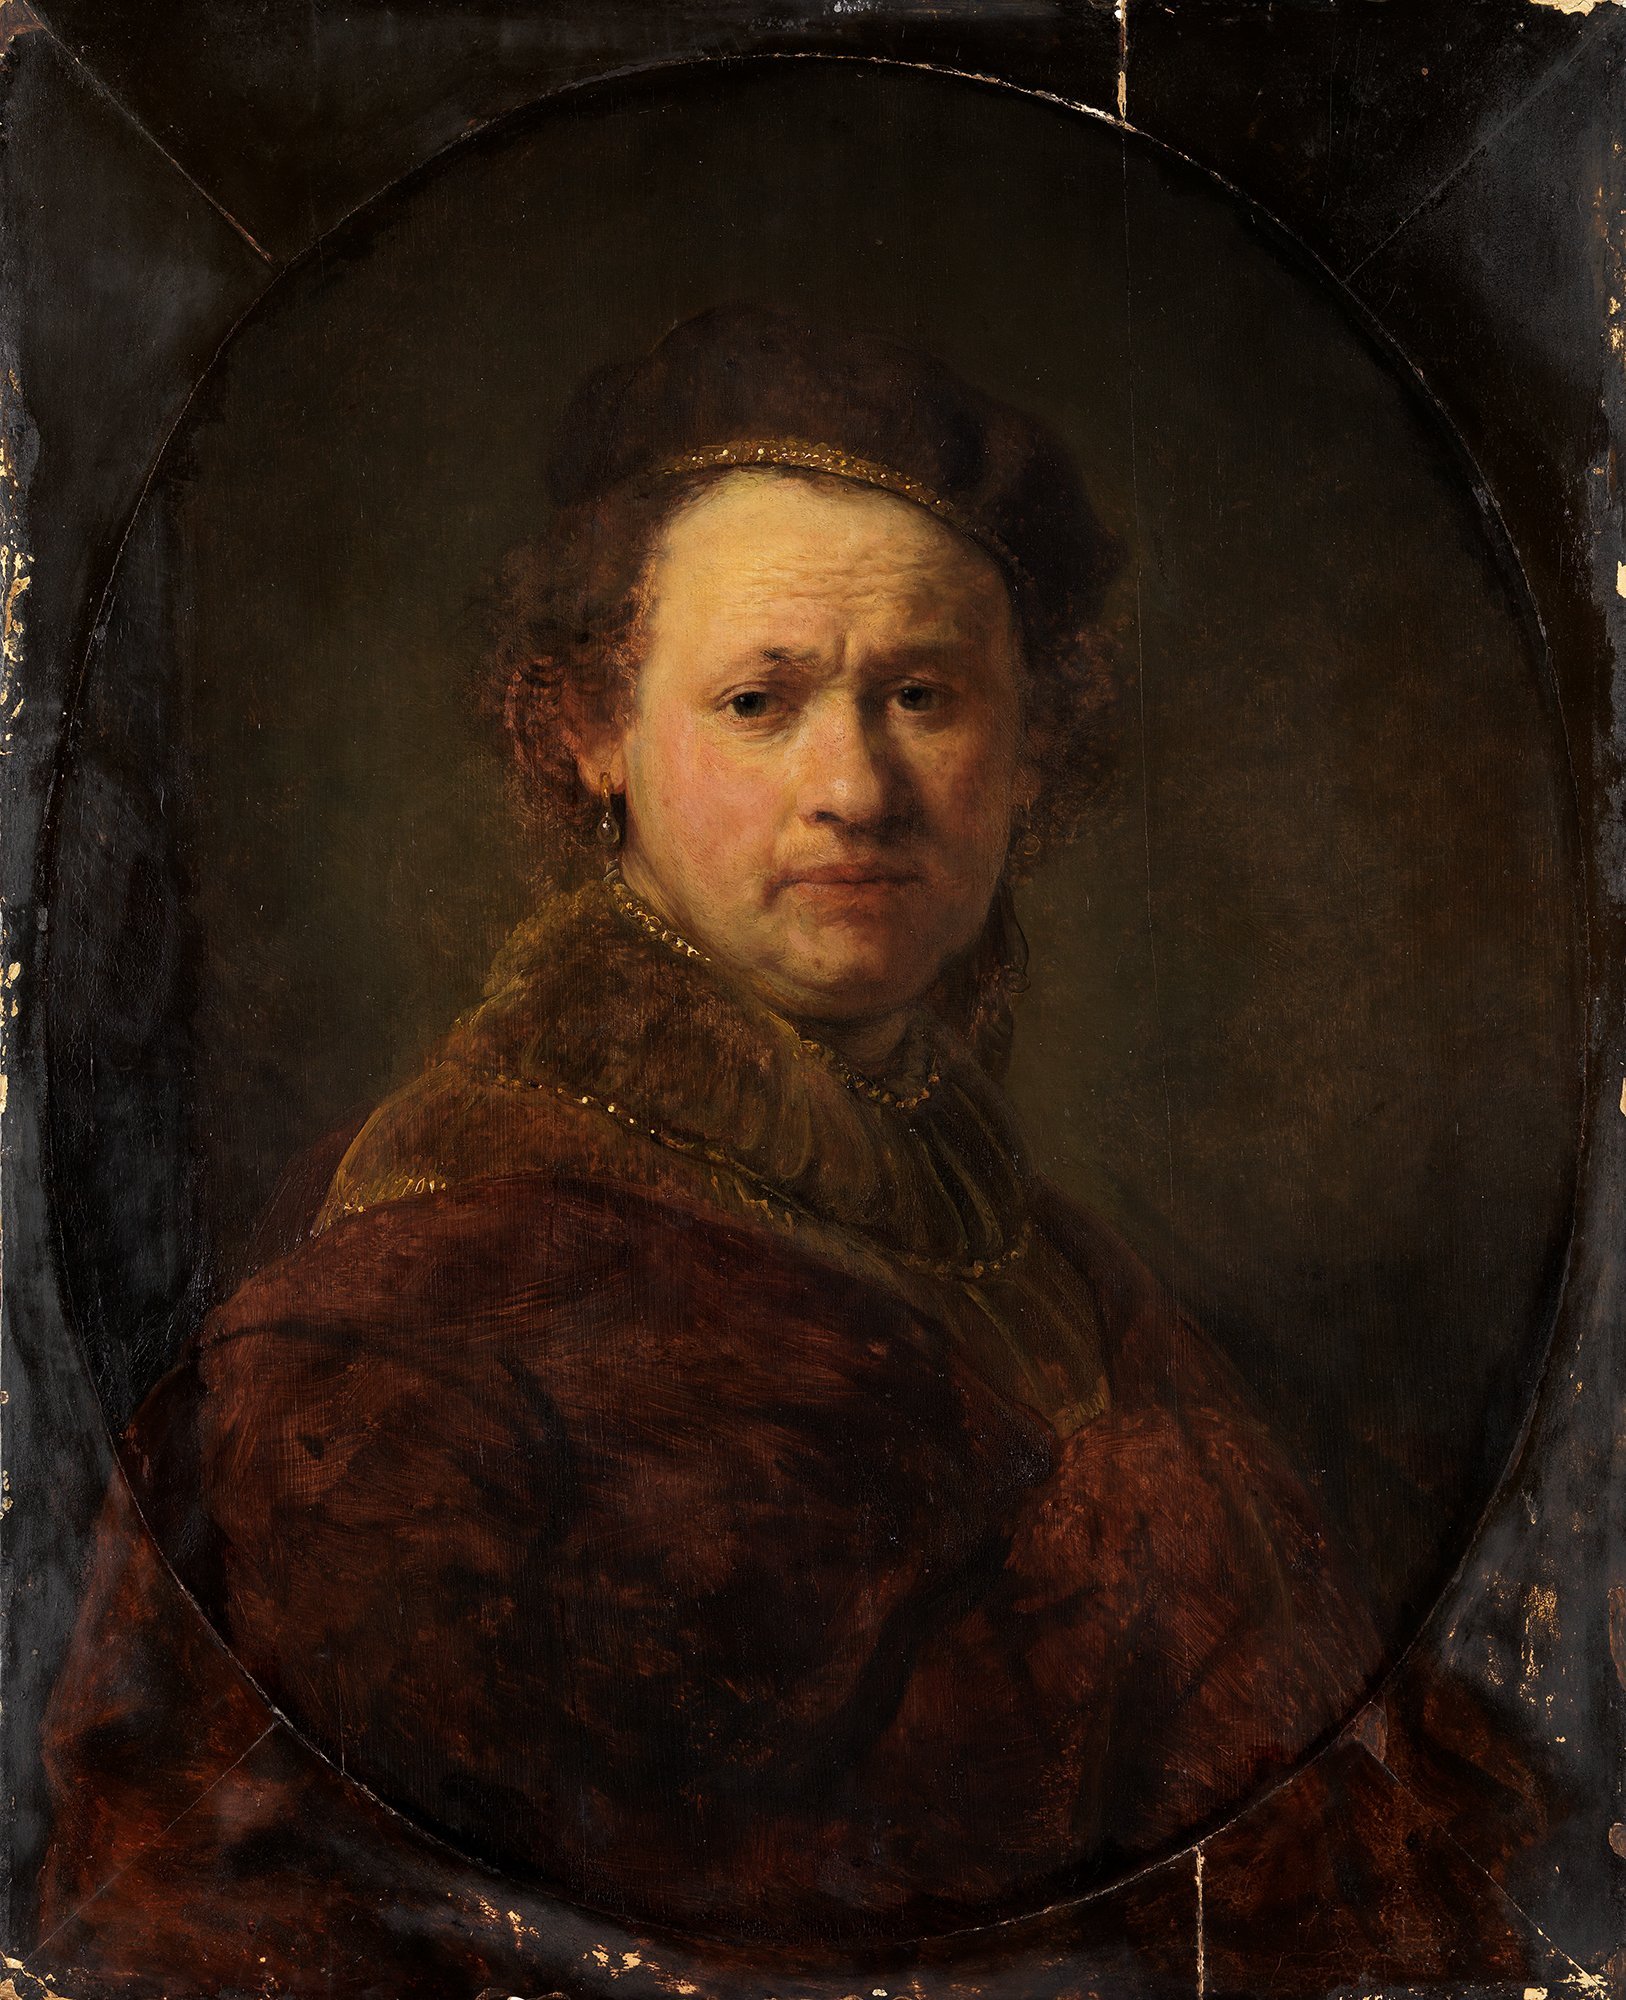 Abbildung des Selbstbildnisses von Rembrandt aus dem Jahr 1650, das in der Ausstellung "Ich bin hier" vom 31. Oktober 2015 bis 31. Januar 2016 in der Staatlichen Kunsthalle Karlsruhe zu sehen war.